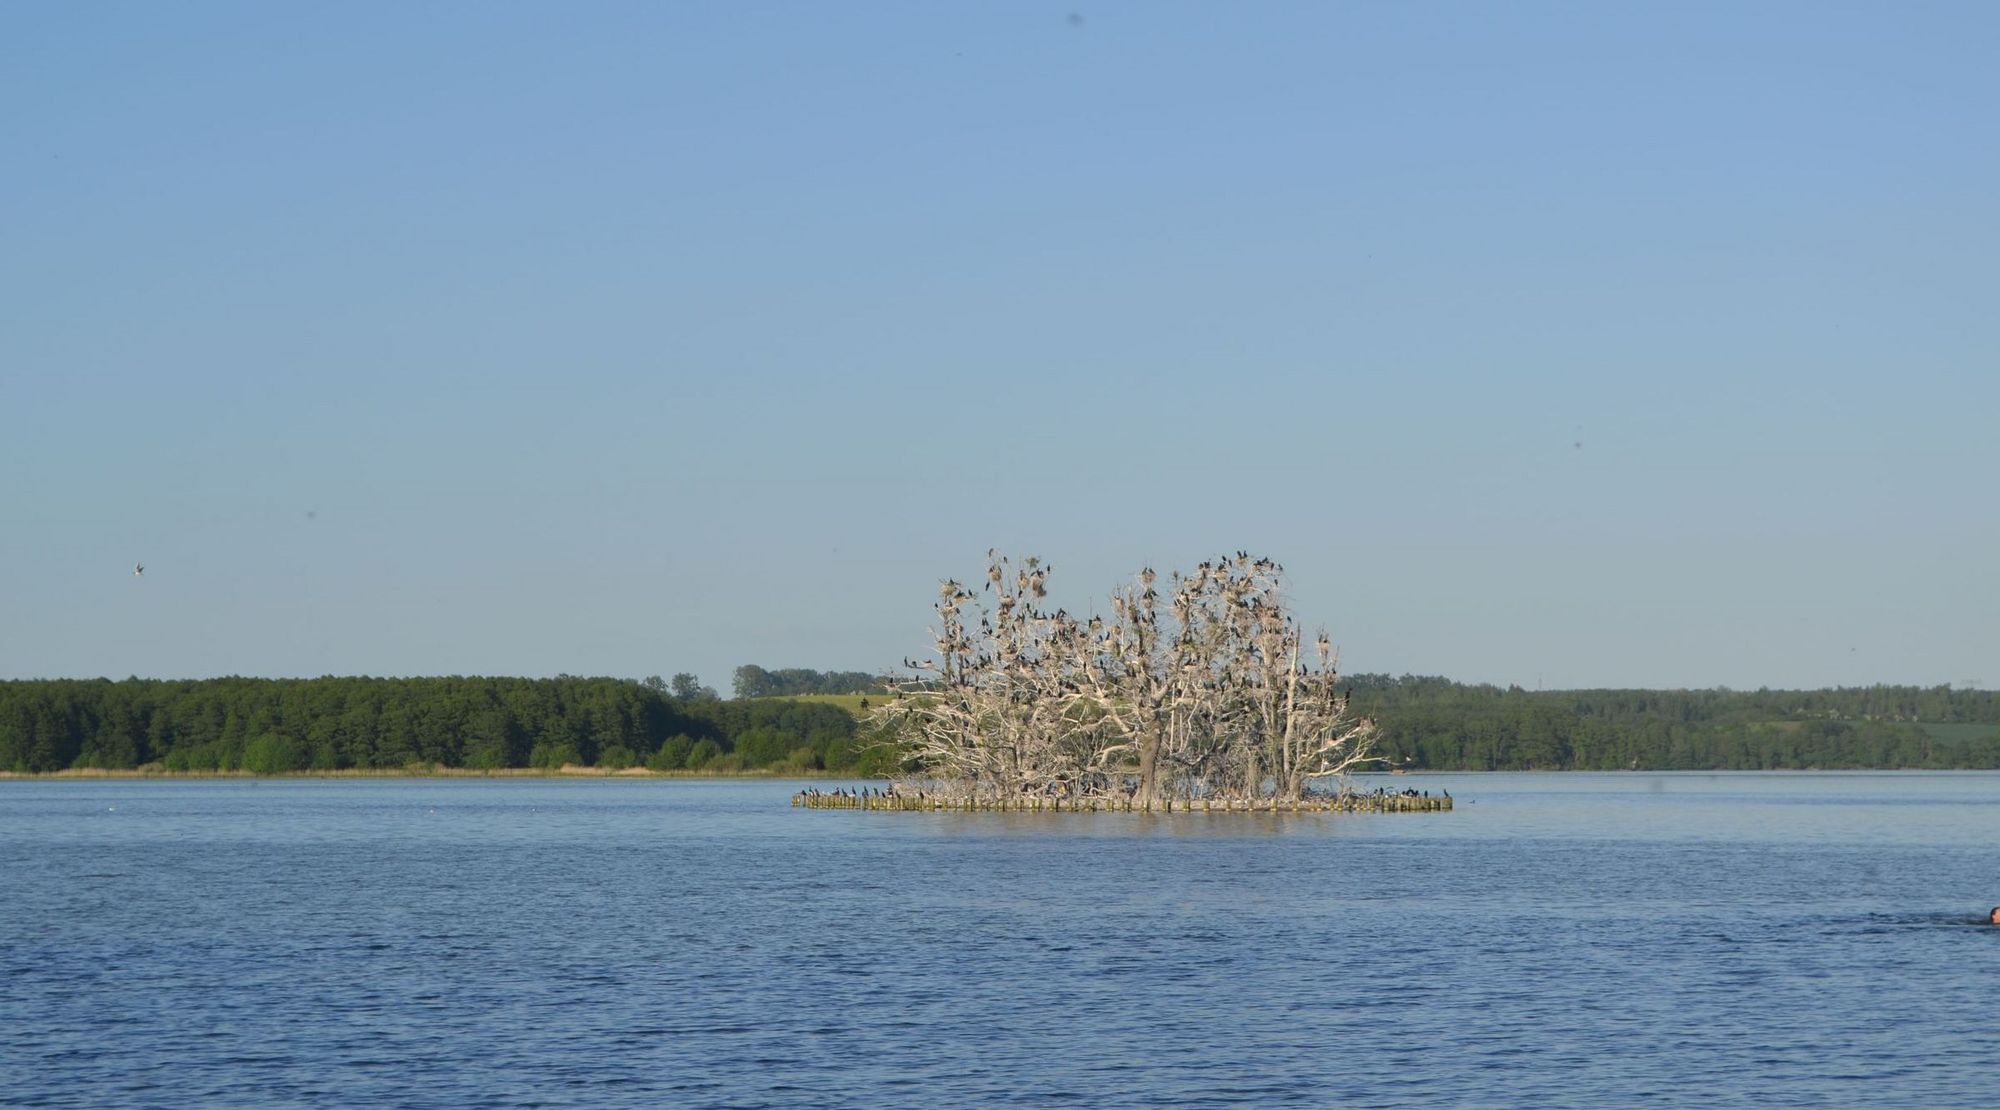 Eine Kolonie Kormorane auf einer Seeinsel mit abgestorbenem Baumbestand